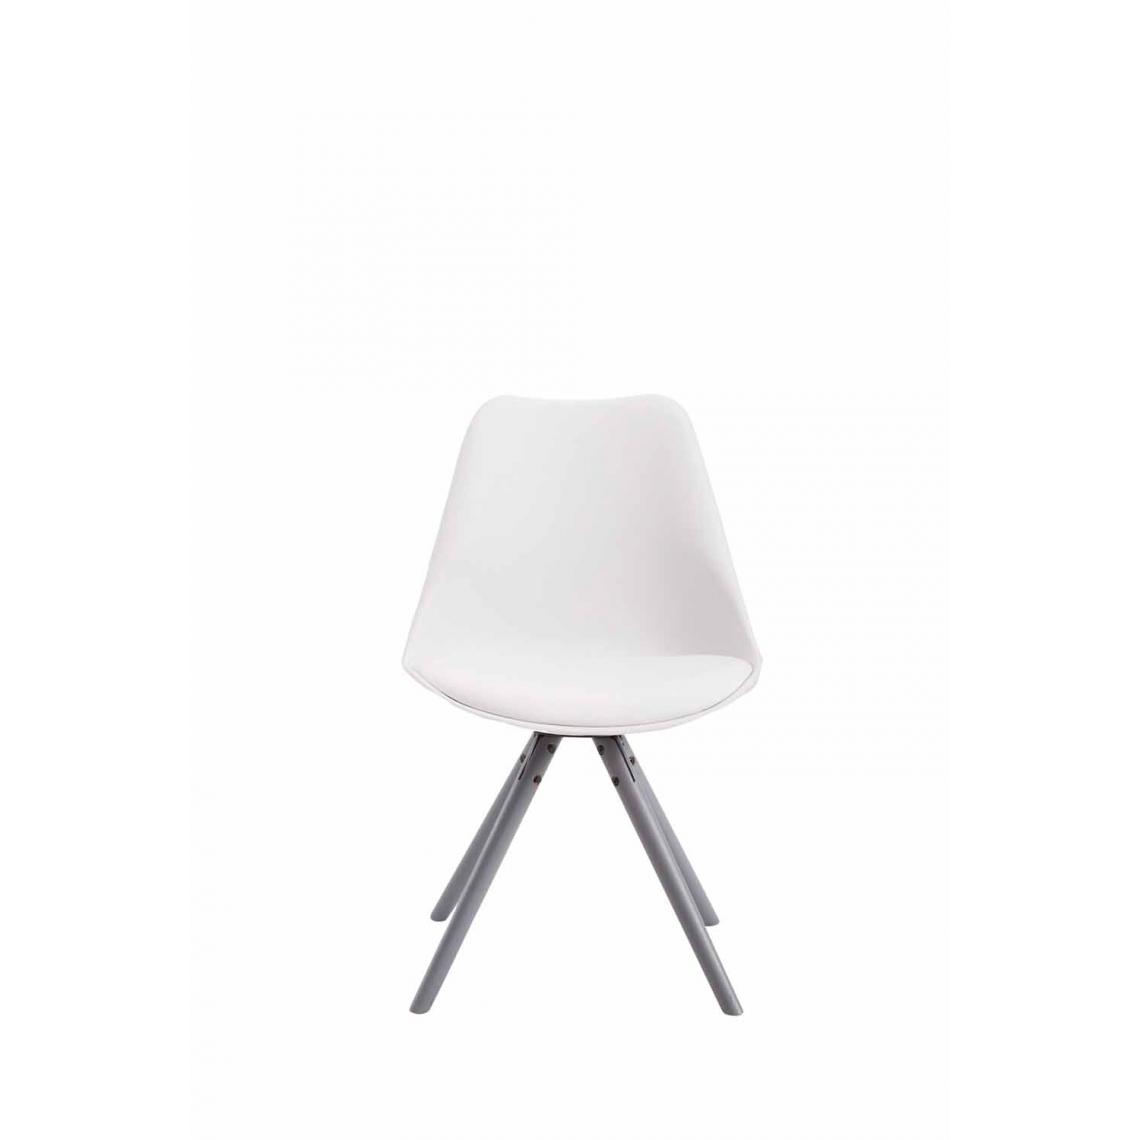 Icaverne - Superbe Chaise visiteur serie Katmandou cuir synthétique rond gris couleur blanc - Chaises